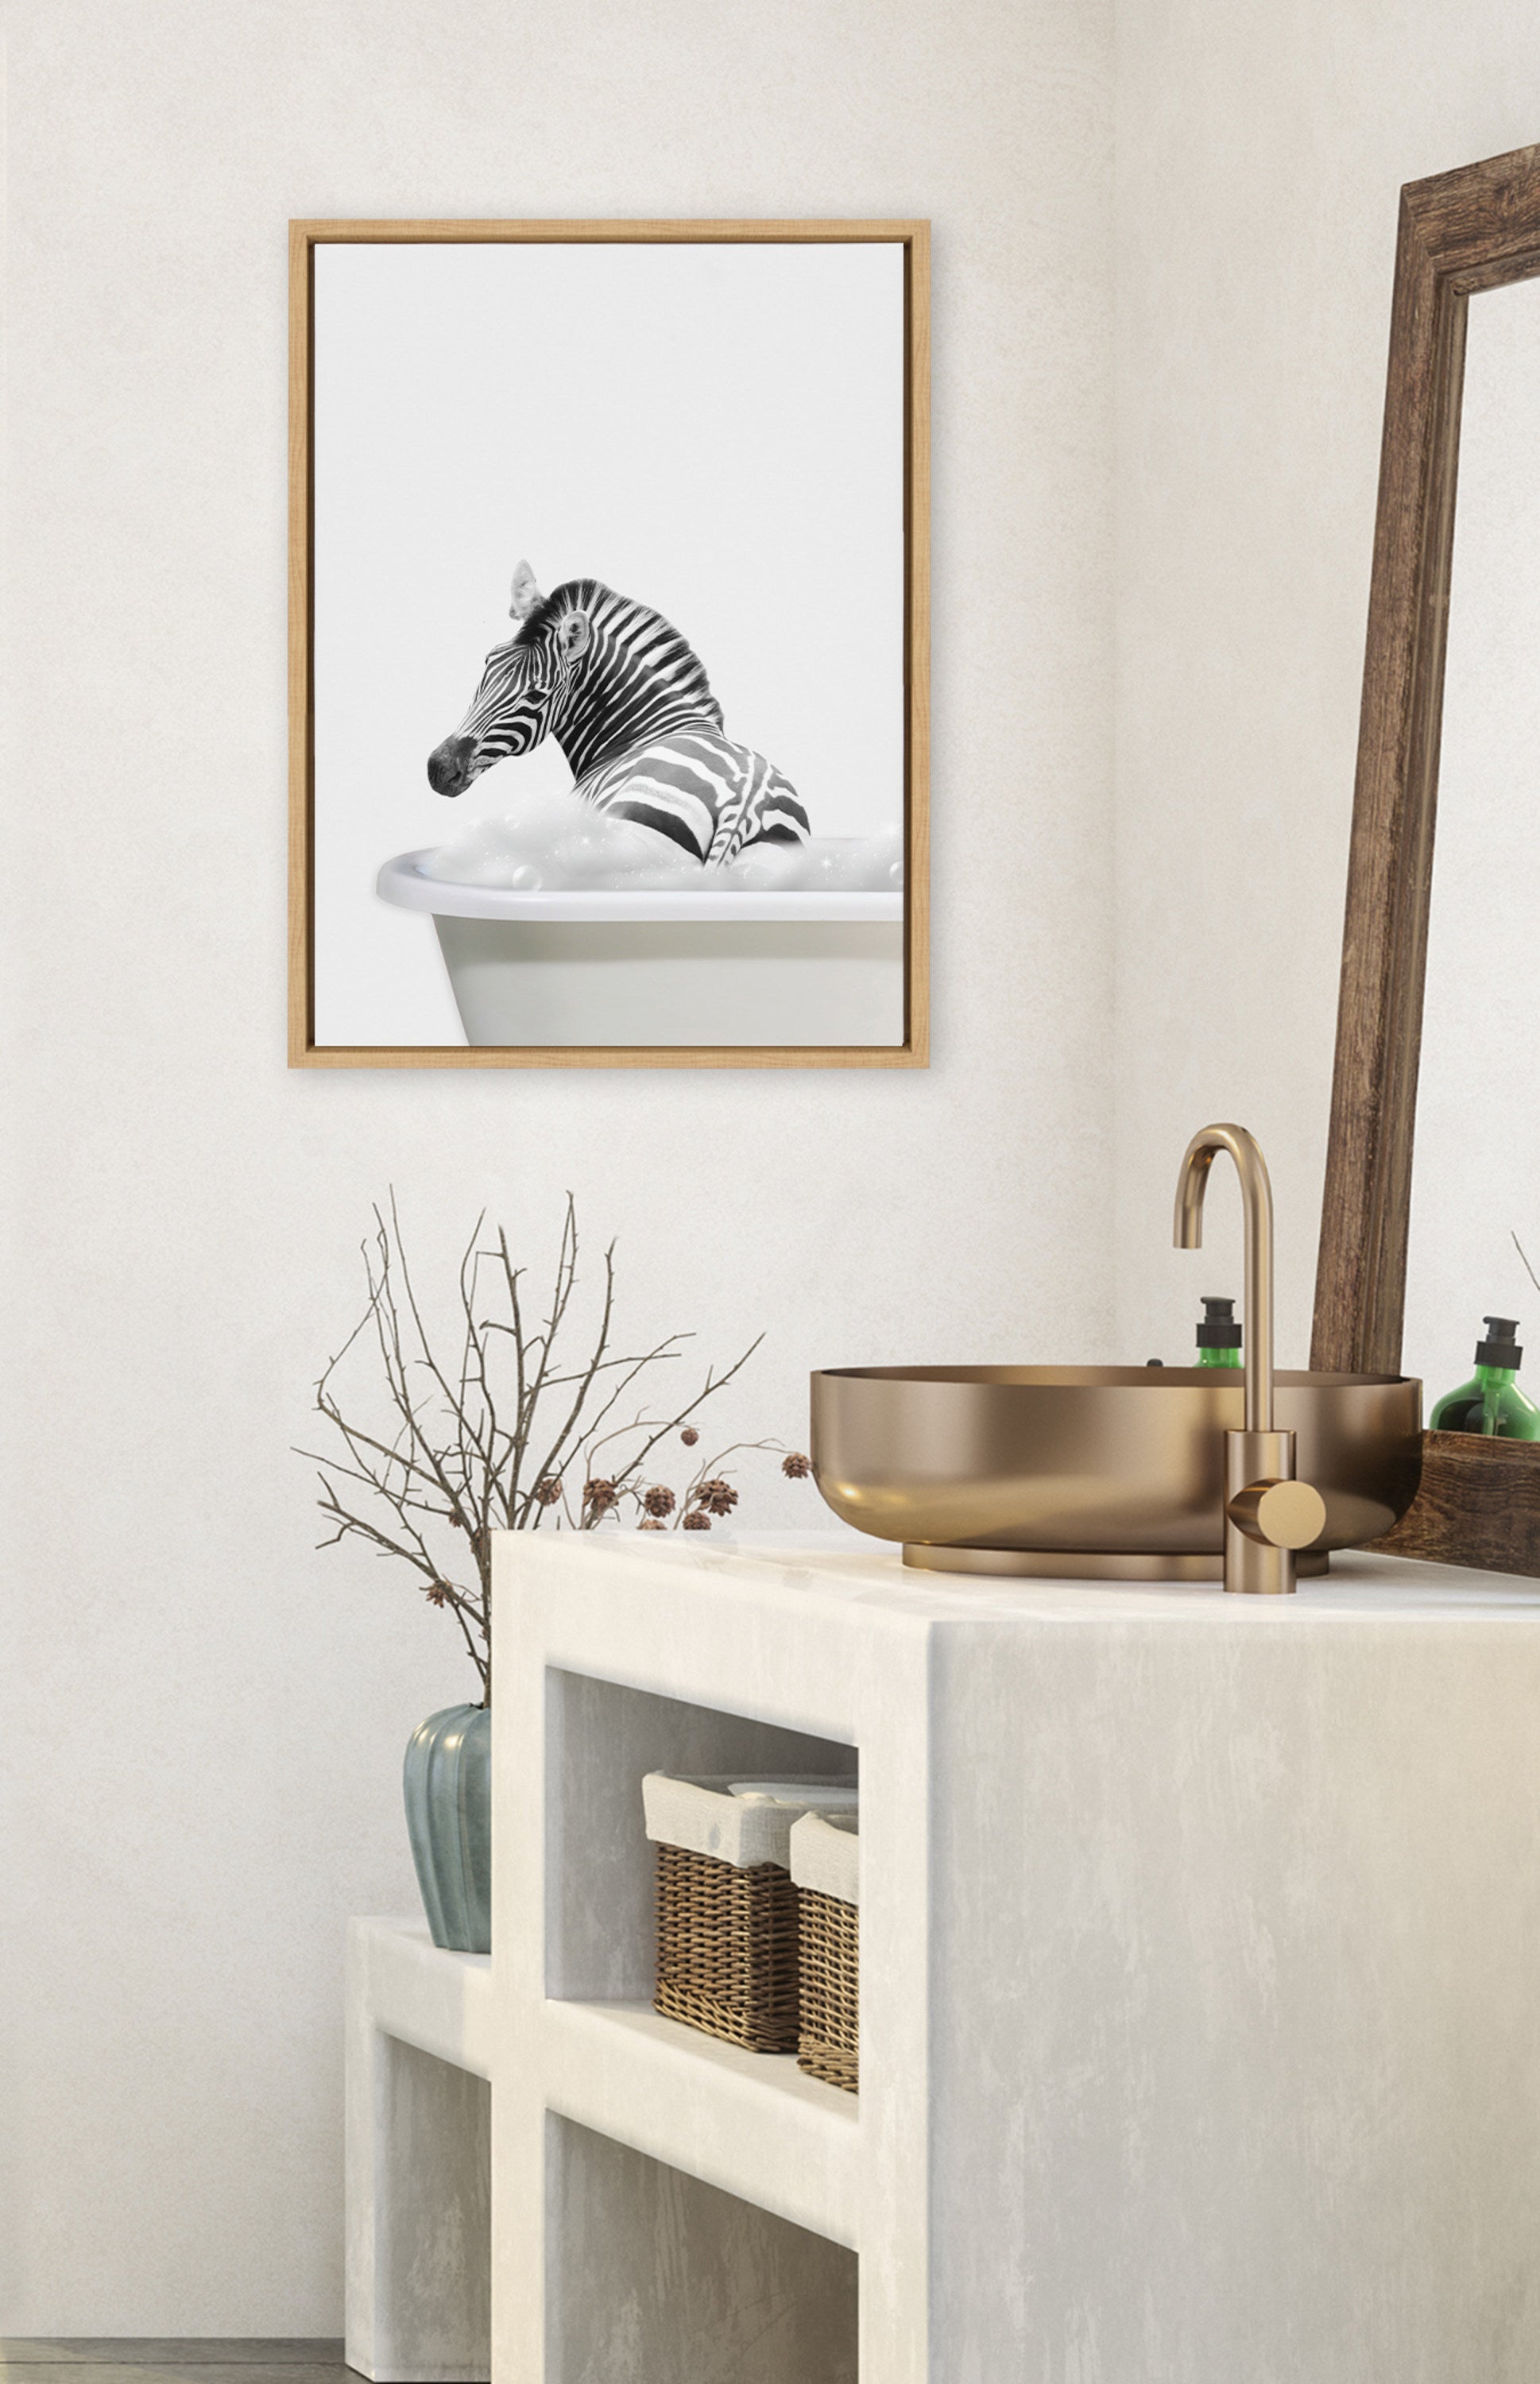 Sylvie Bathroom Bubble Bath Zebra Framed Canvas by The Creative Bunch Studio